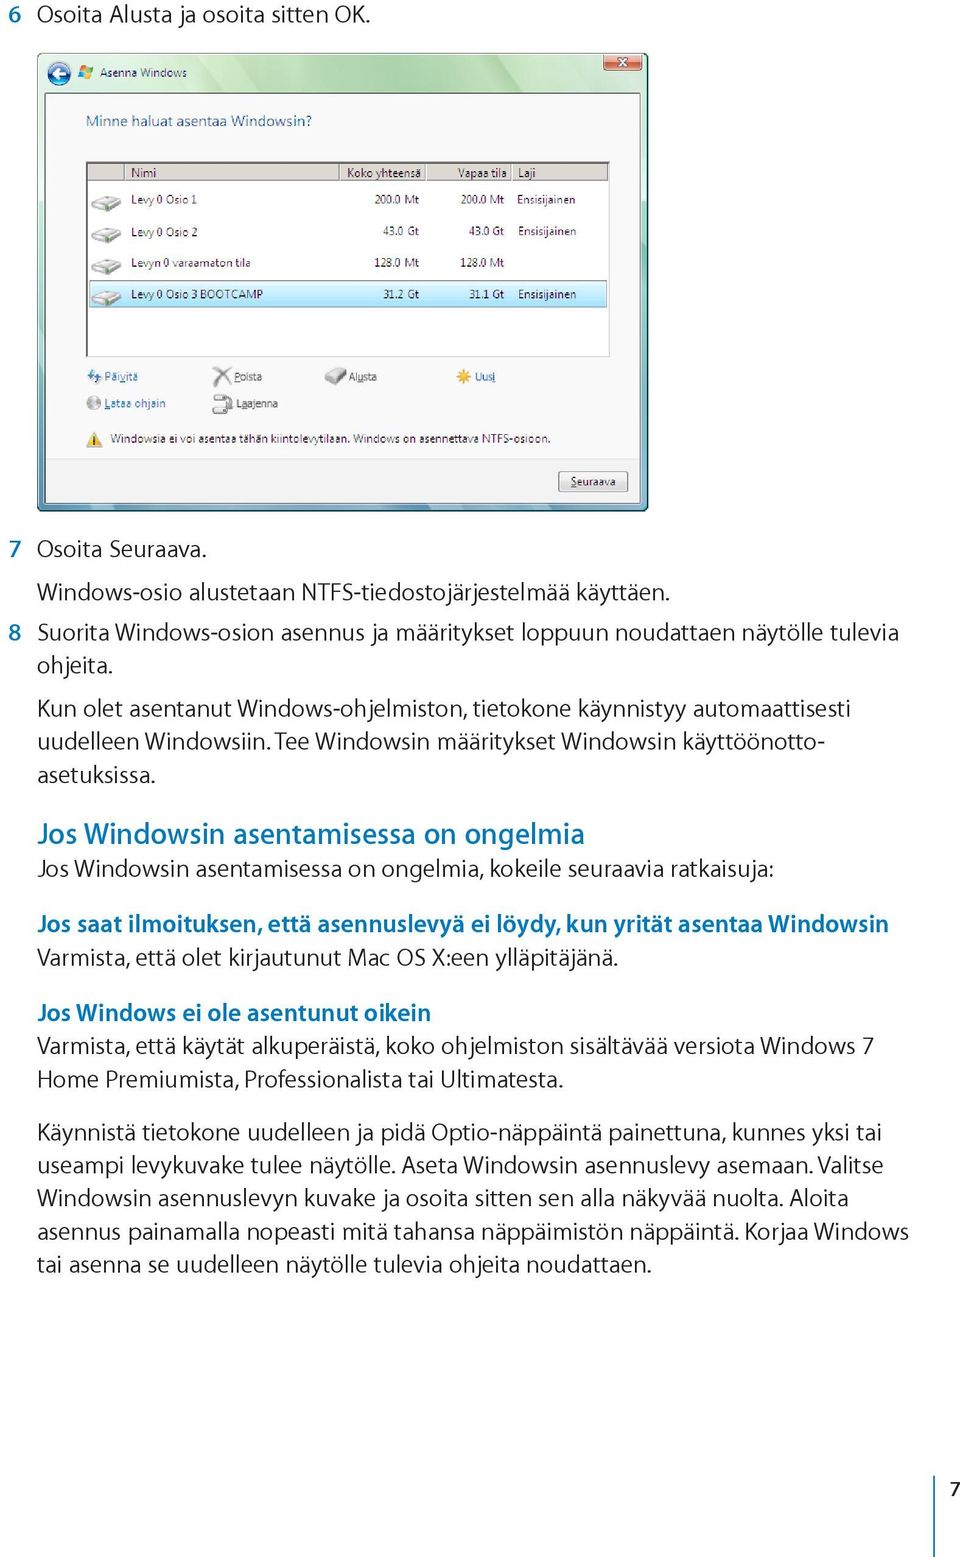 Tee Windowsin määritykset Windowsin käyttöönottoasetuksissa.